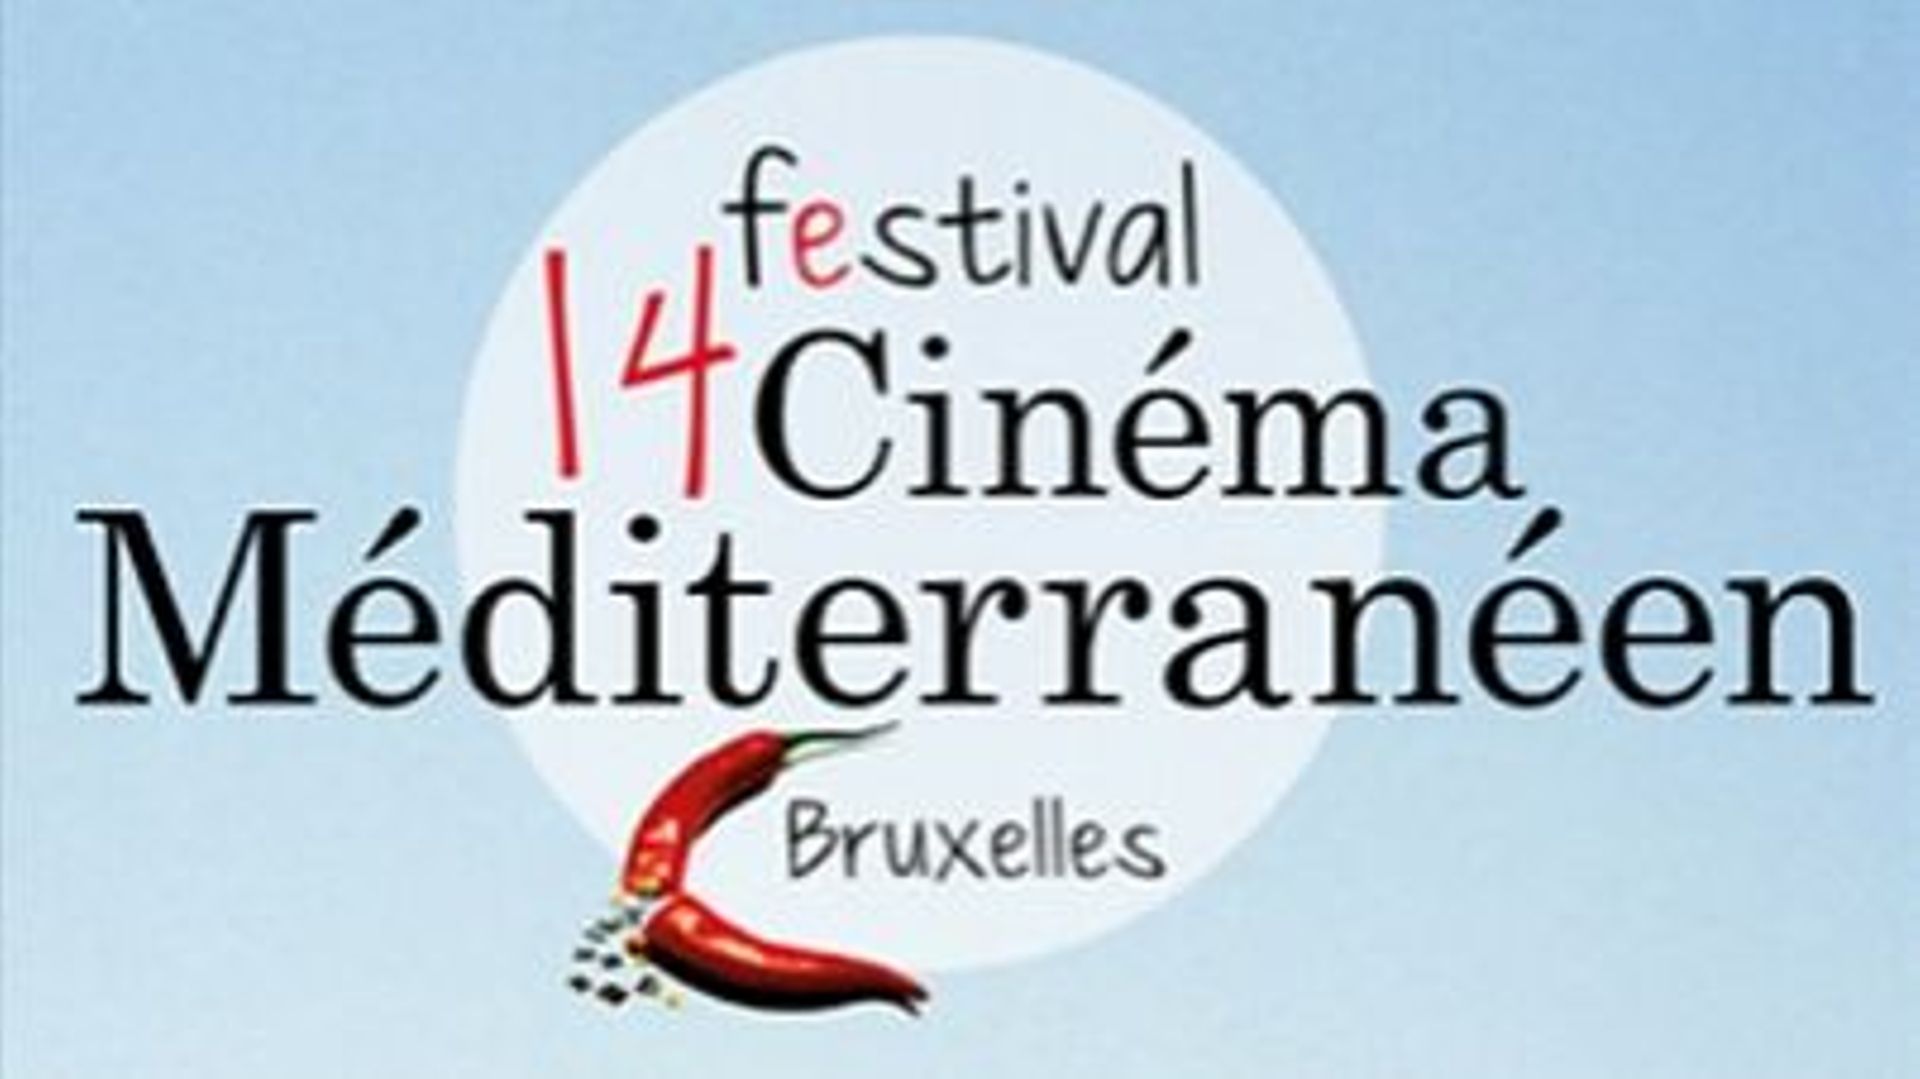 Pour ses 25 ans, le festival Cinéma Méditerranéen de Bruxelles met à l'honneur l'Italie